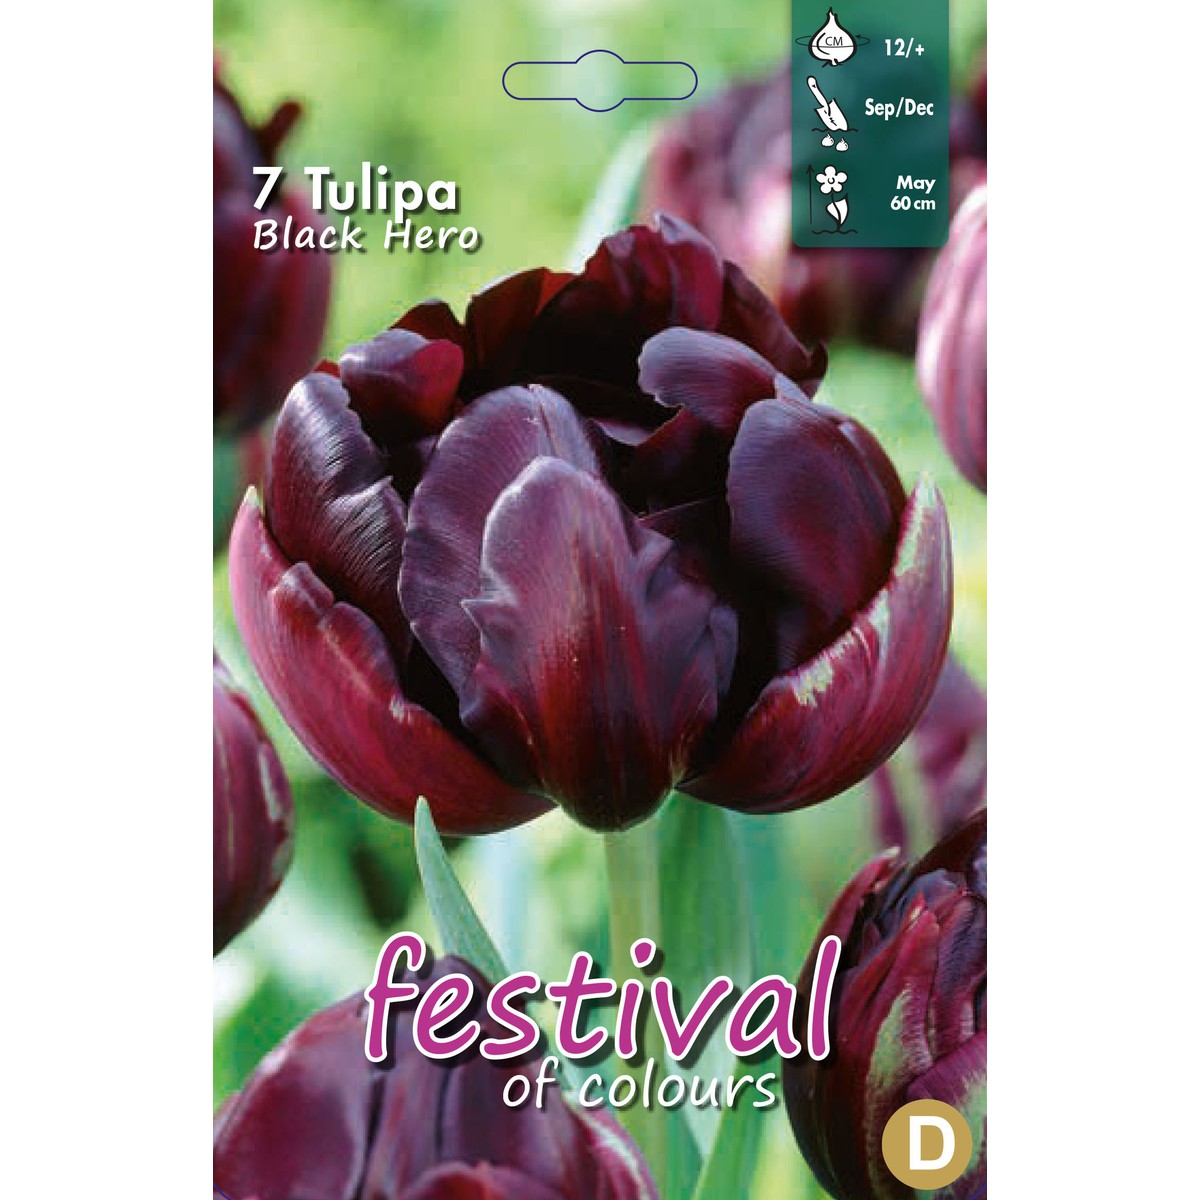   Tulipes 'Black Hero'  10 pcs 12/